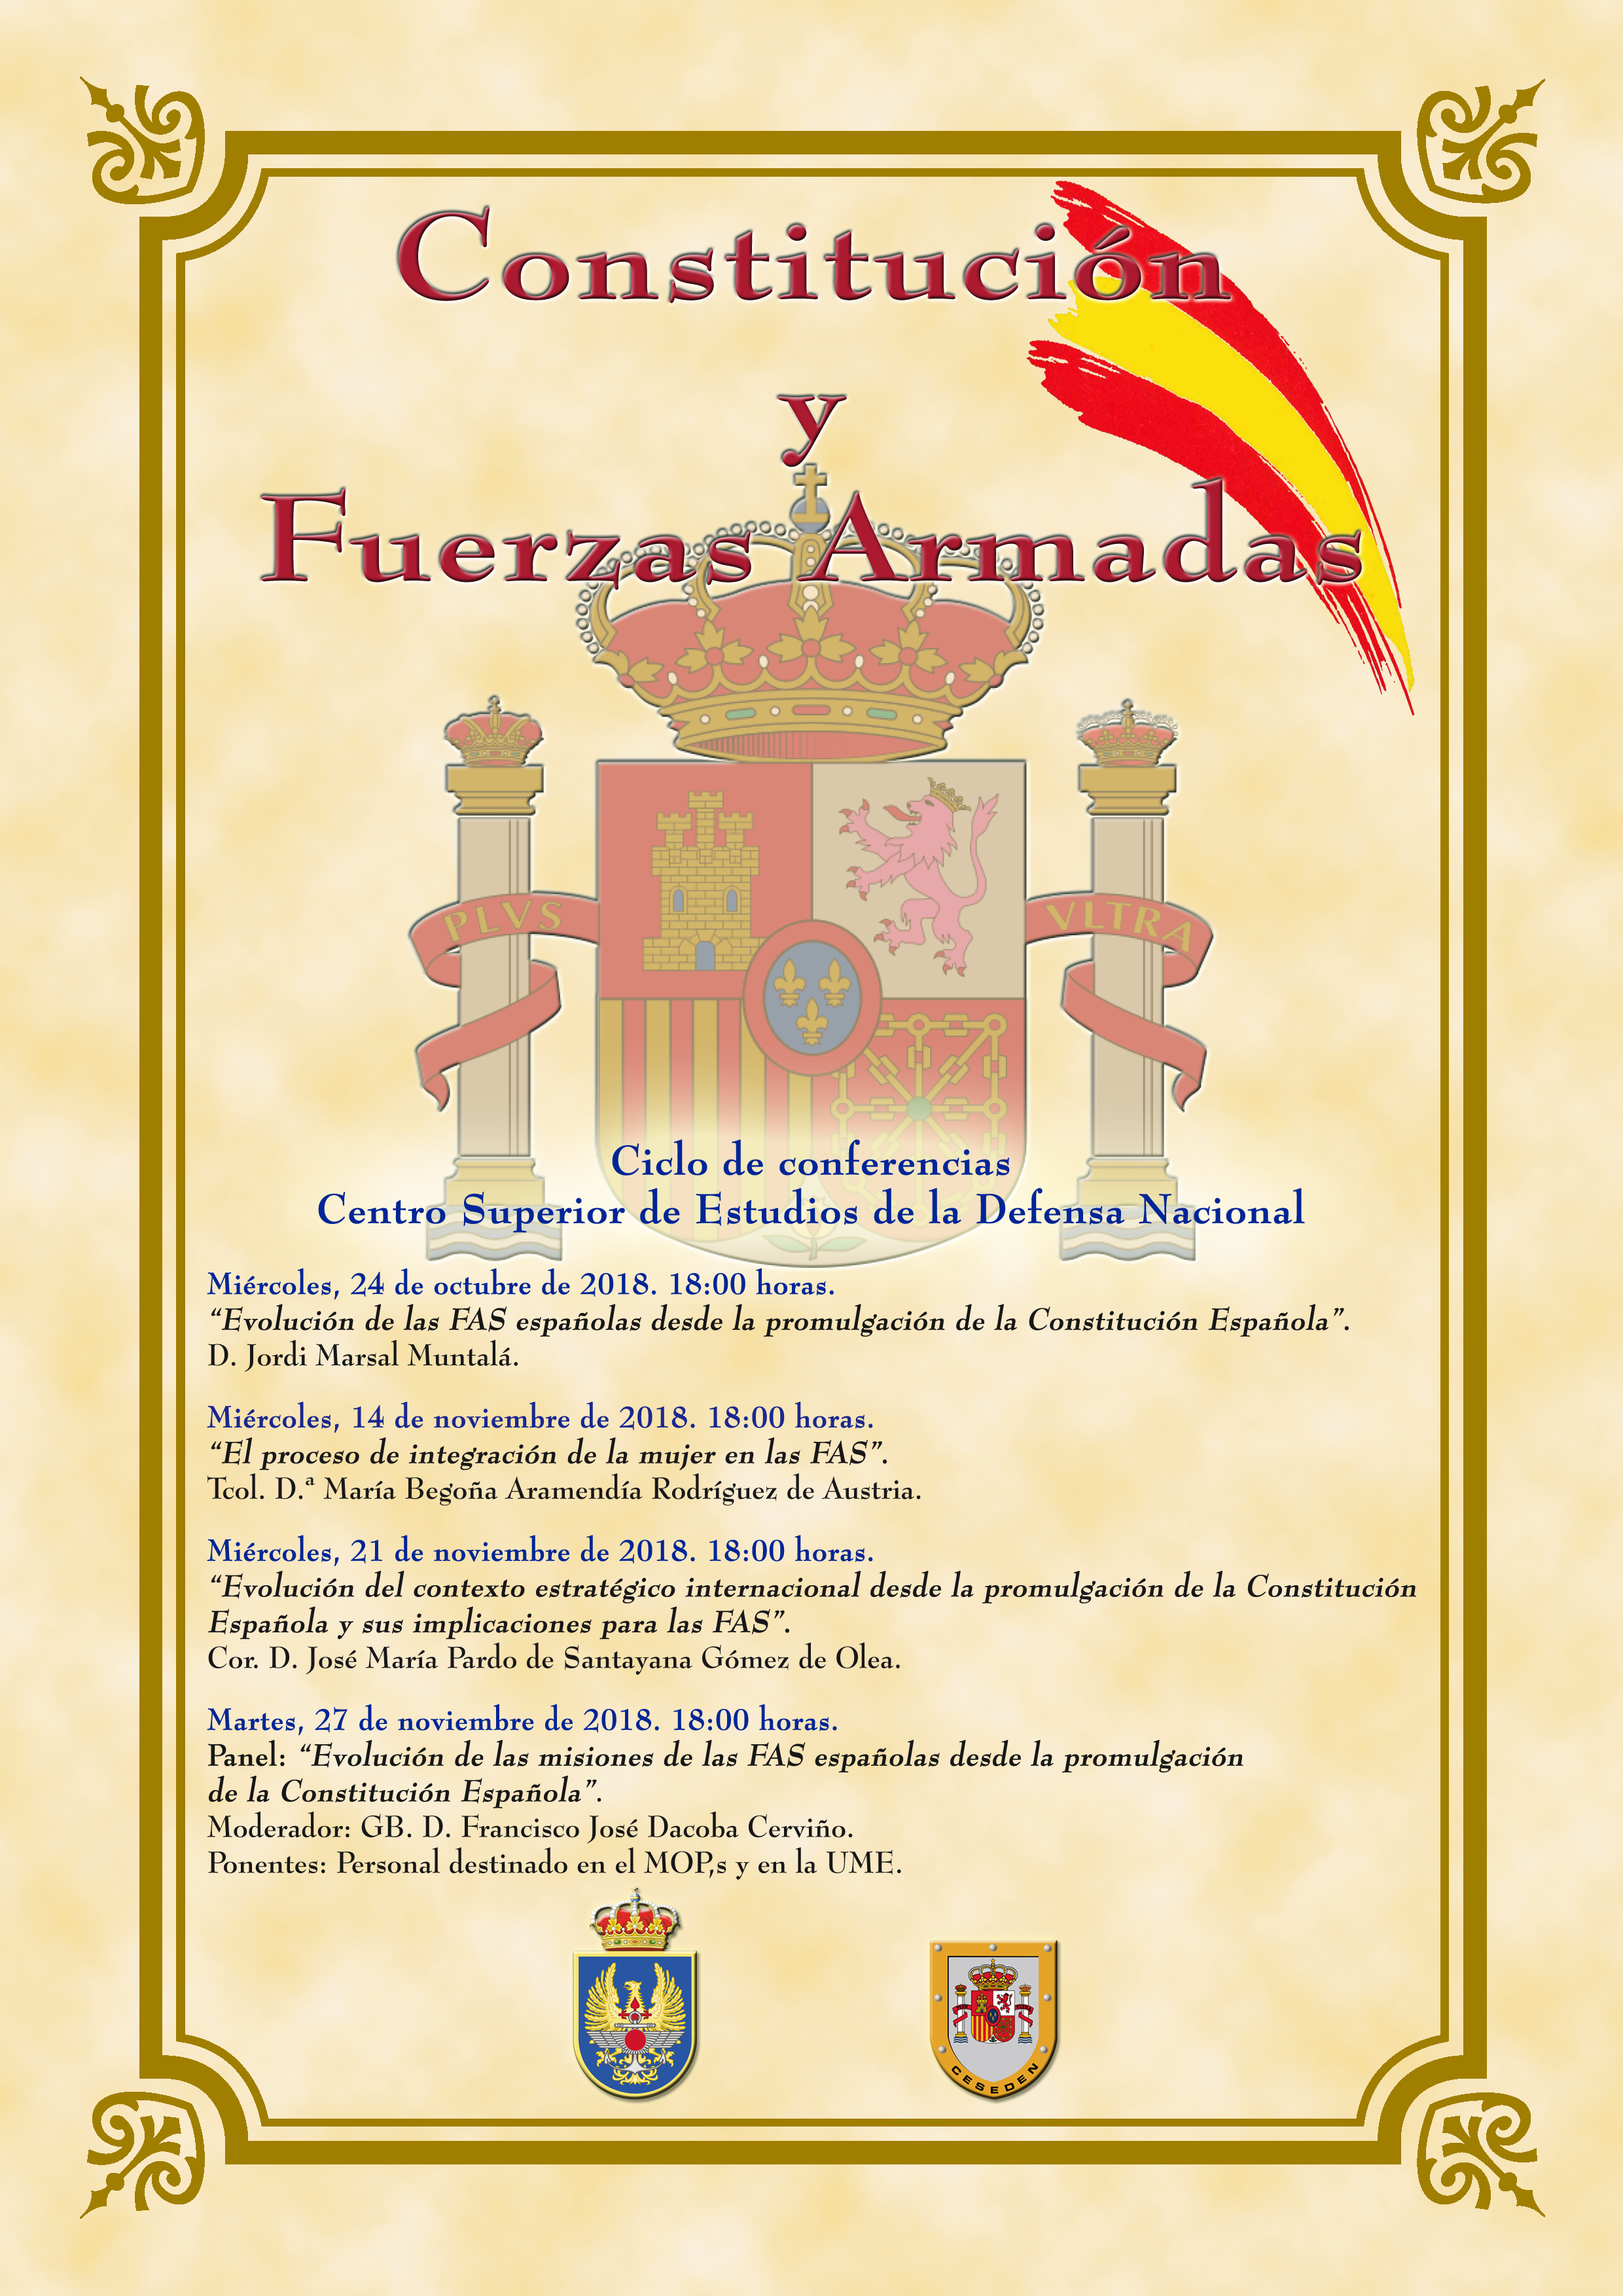 Ciclo de conferencias sobre Constitución y Fuerzas Armadas.